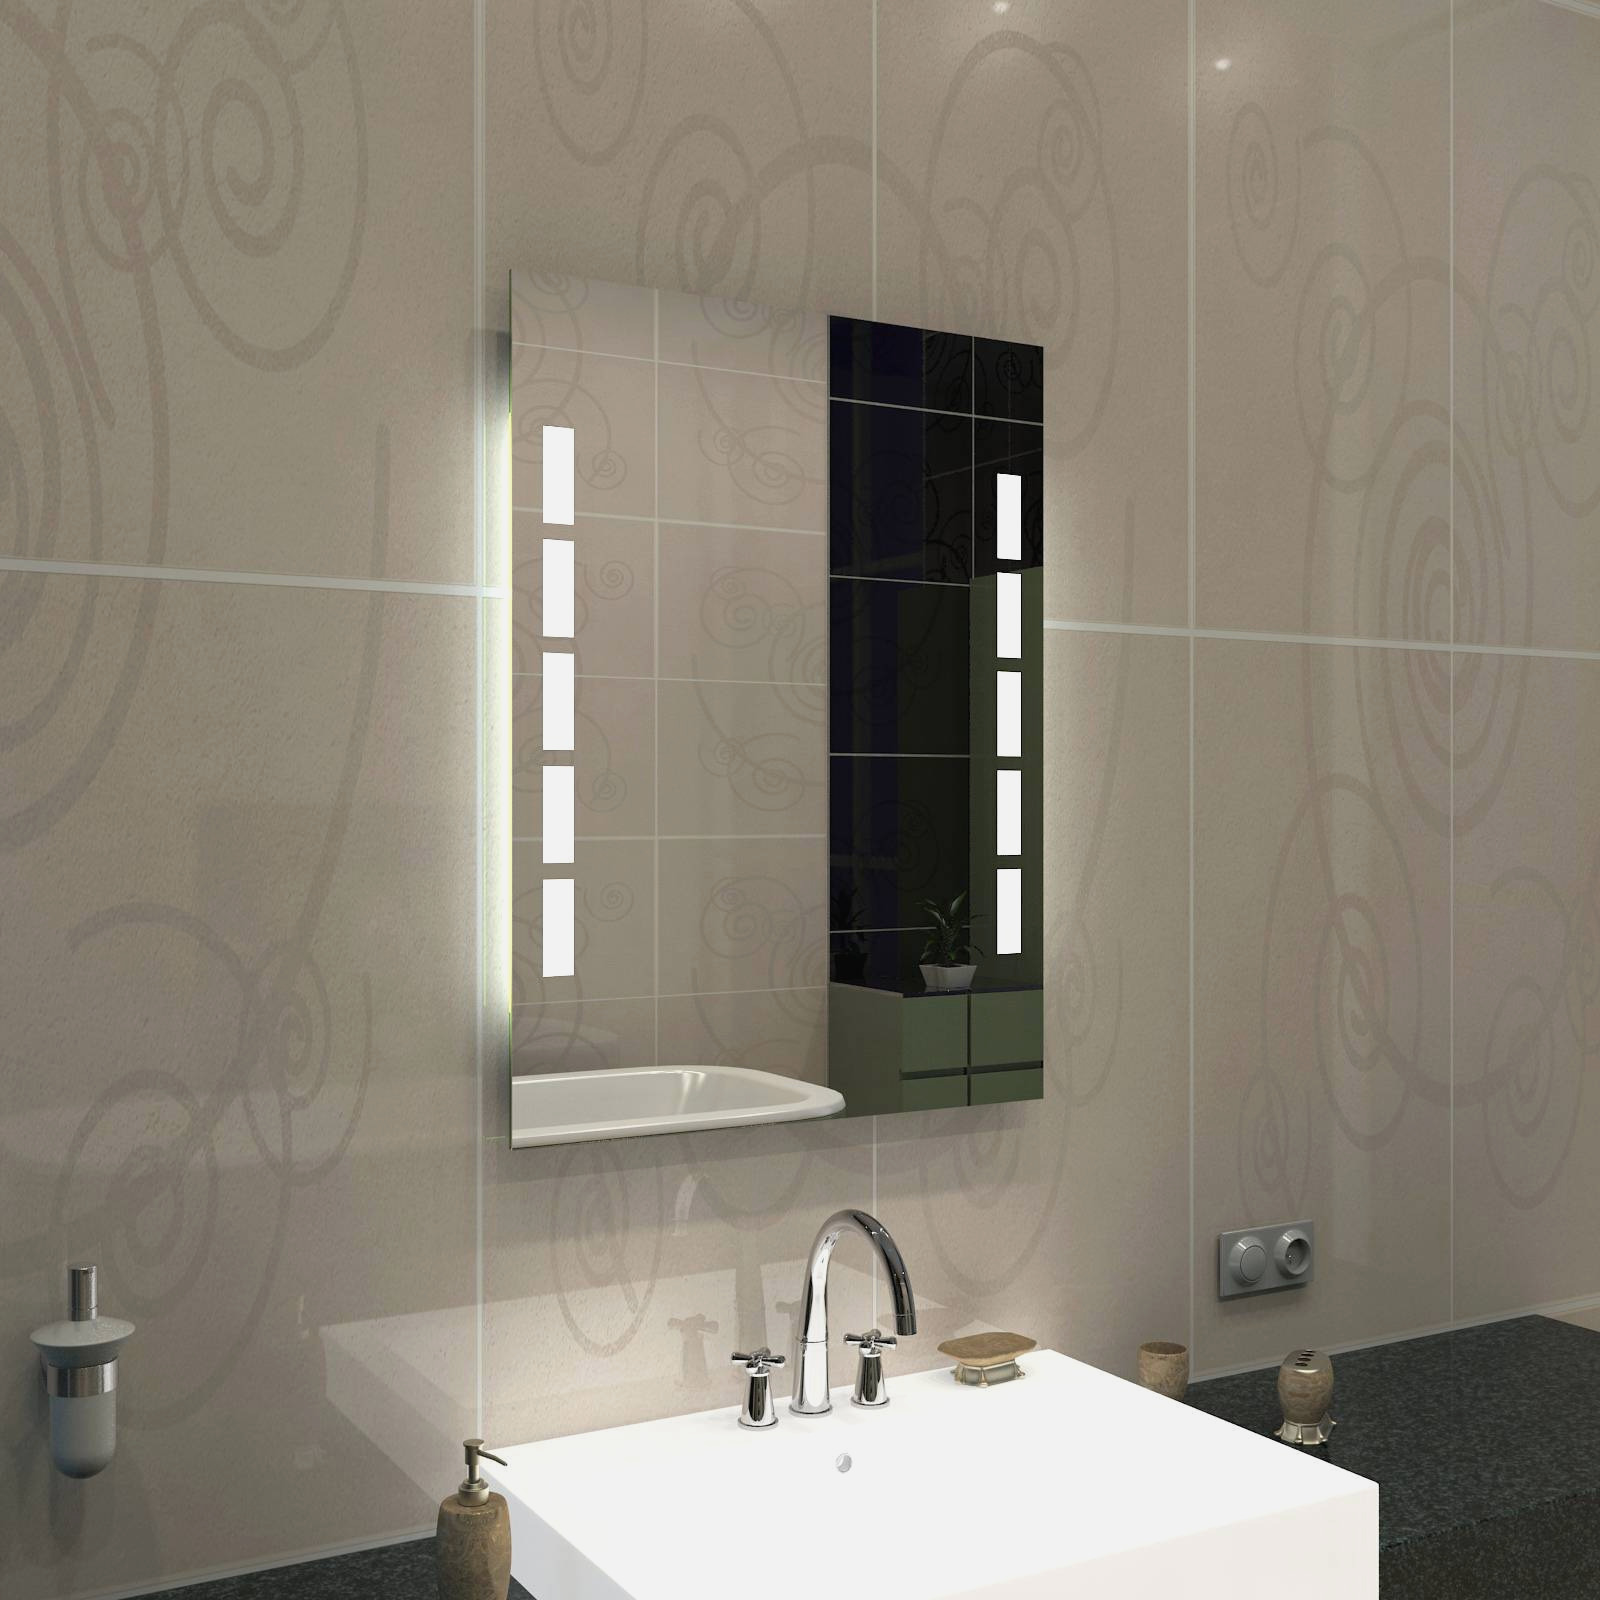 ablage badezimmer elegant lieblich wohnzimmer spiegel mit ablage konzept of ablage badezimmer